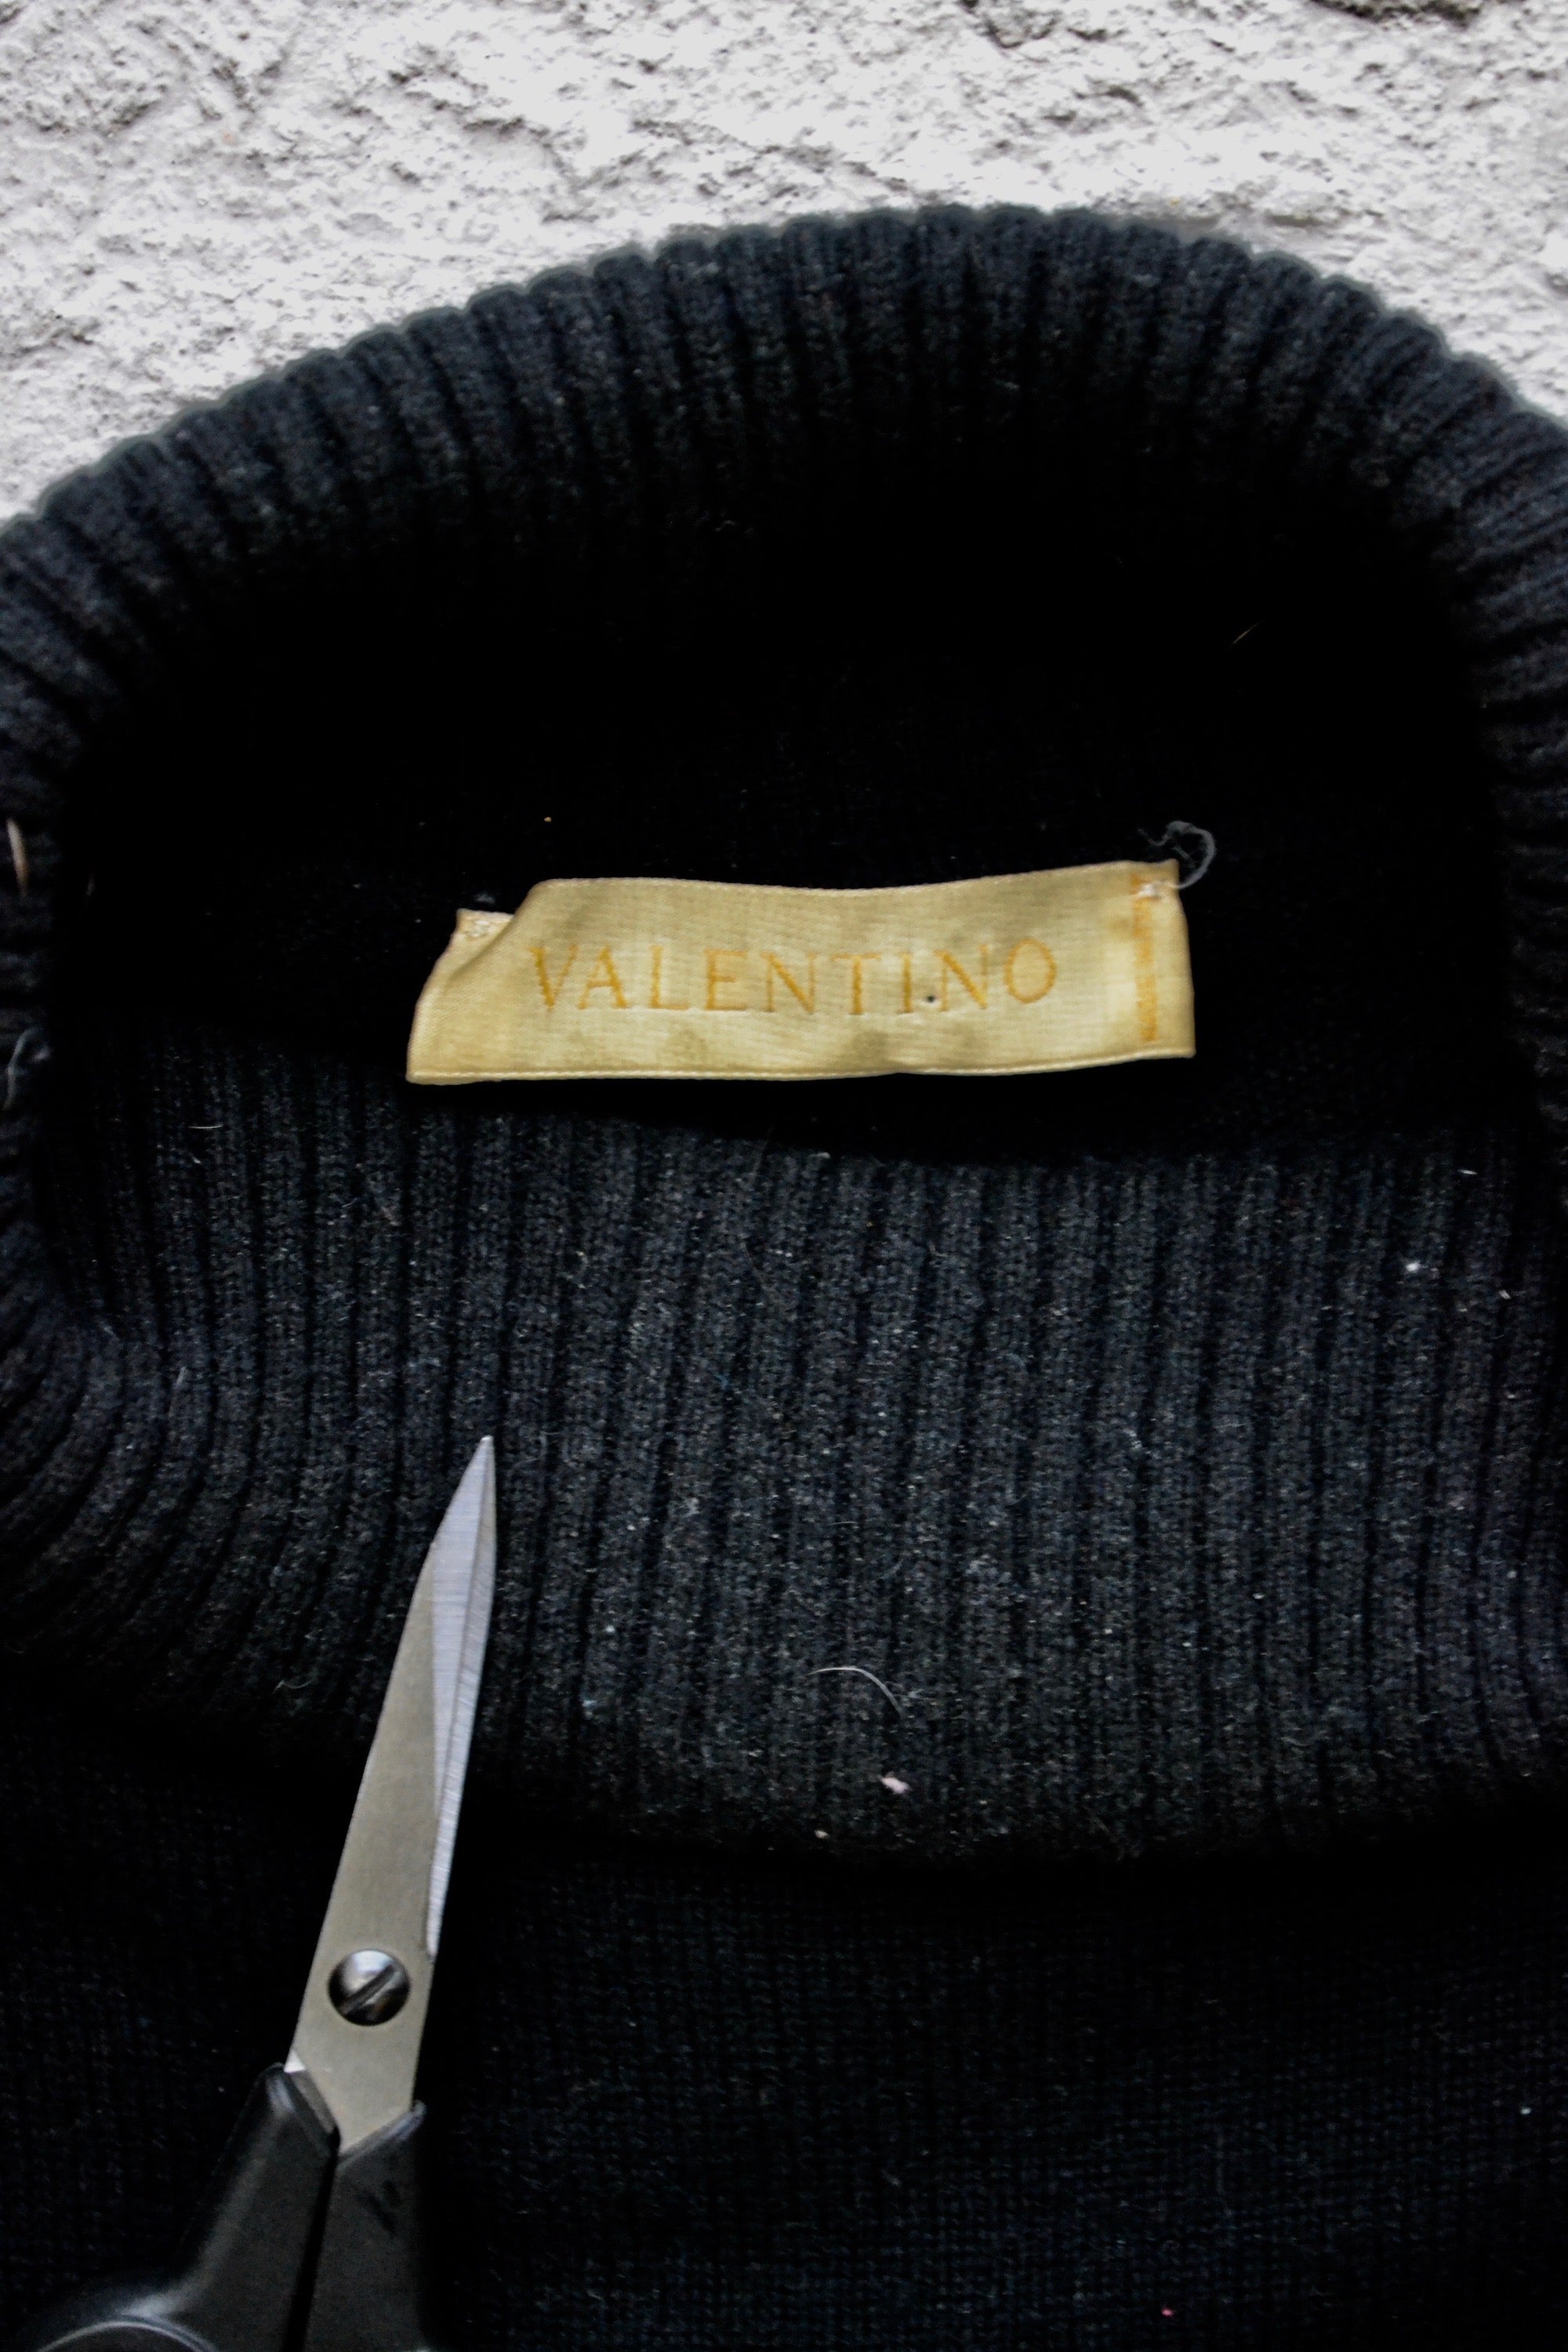 Designer Statement Sweater